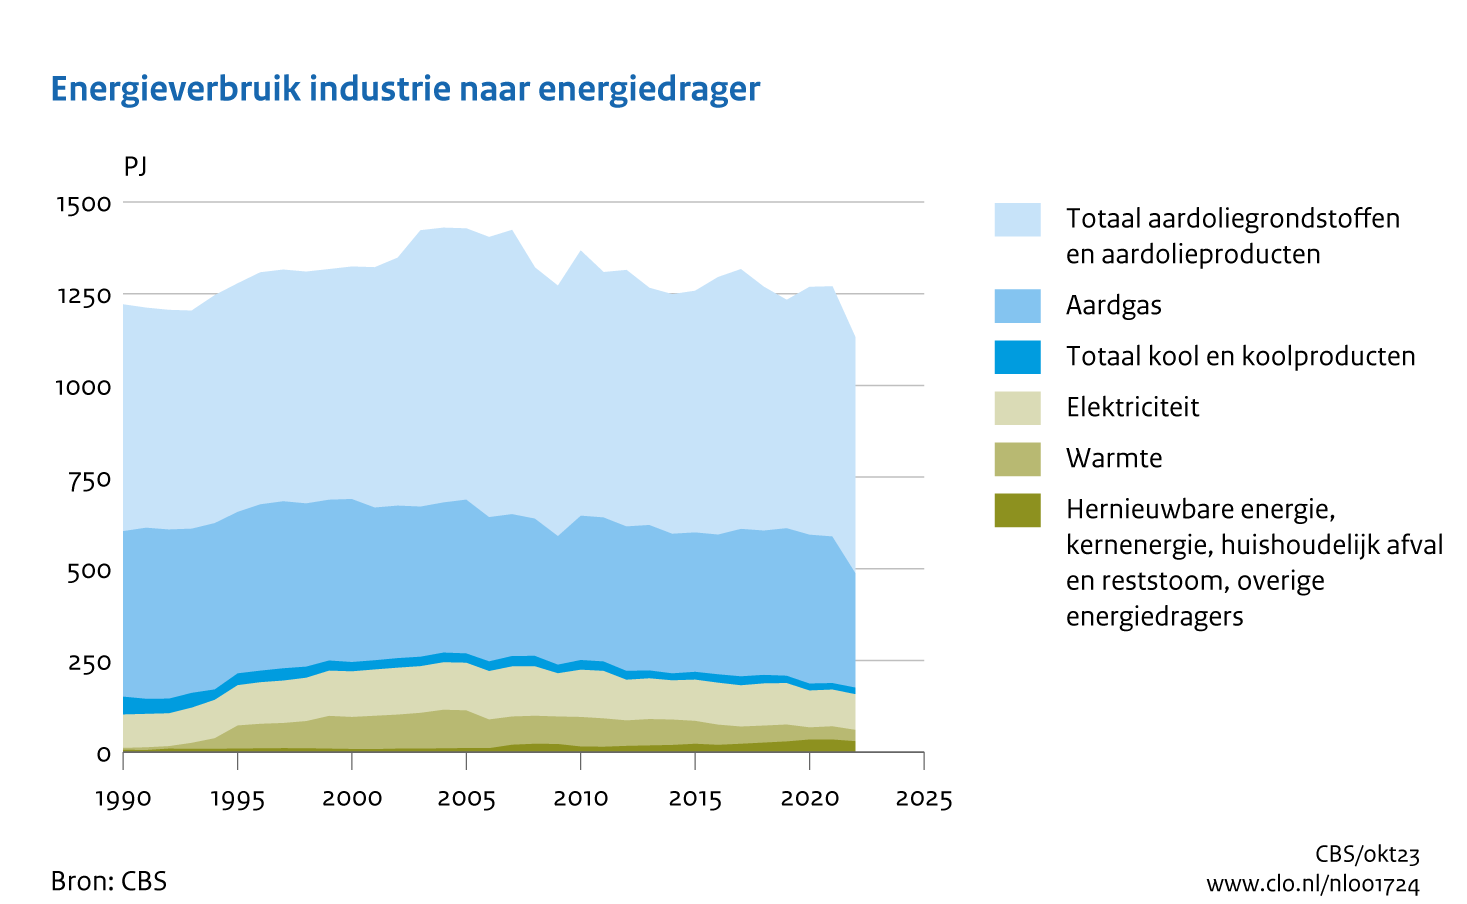 Figuur Energieverbruik industrie naar energiedrager 1990-2022. In de rest van de tekst wordt deze figuur uitgebreider uitgelegd.